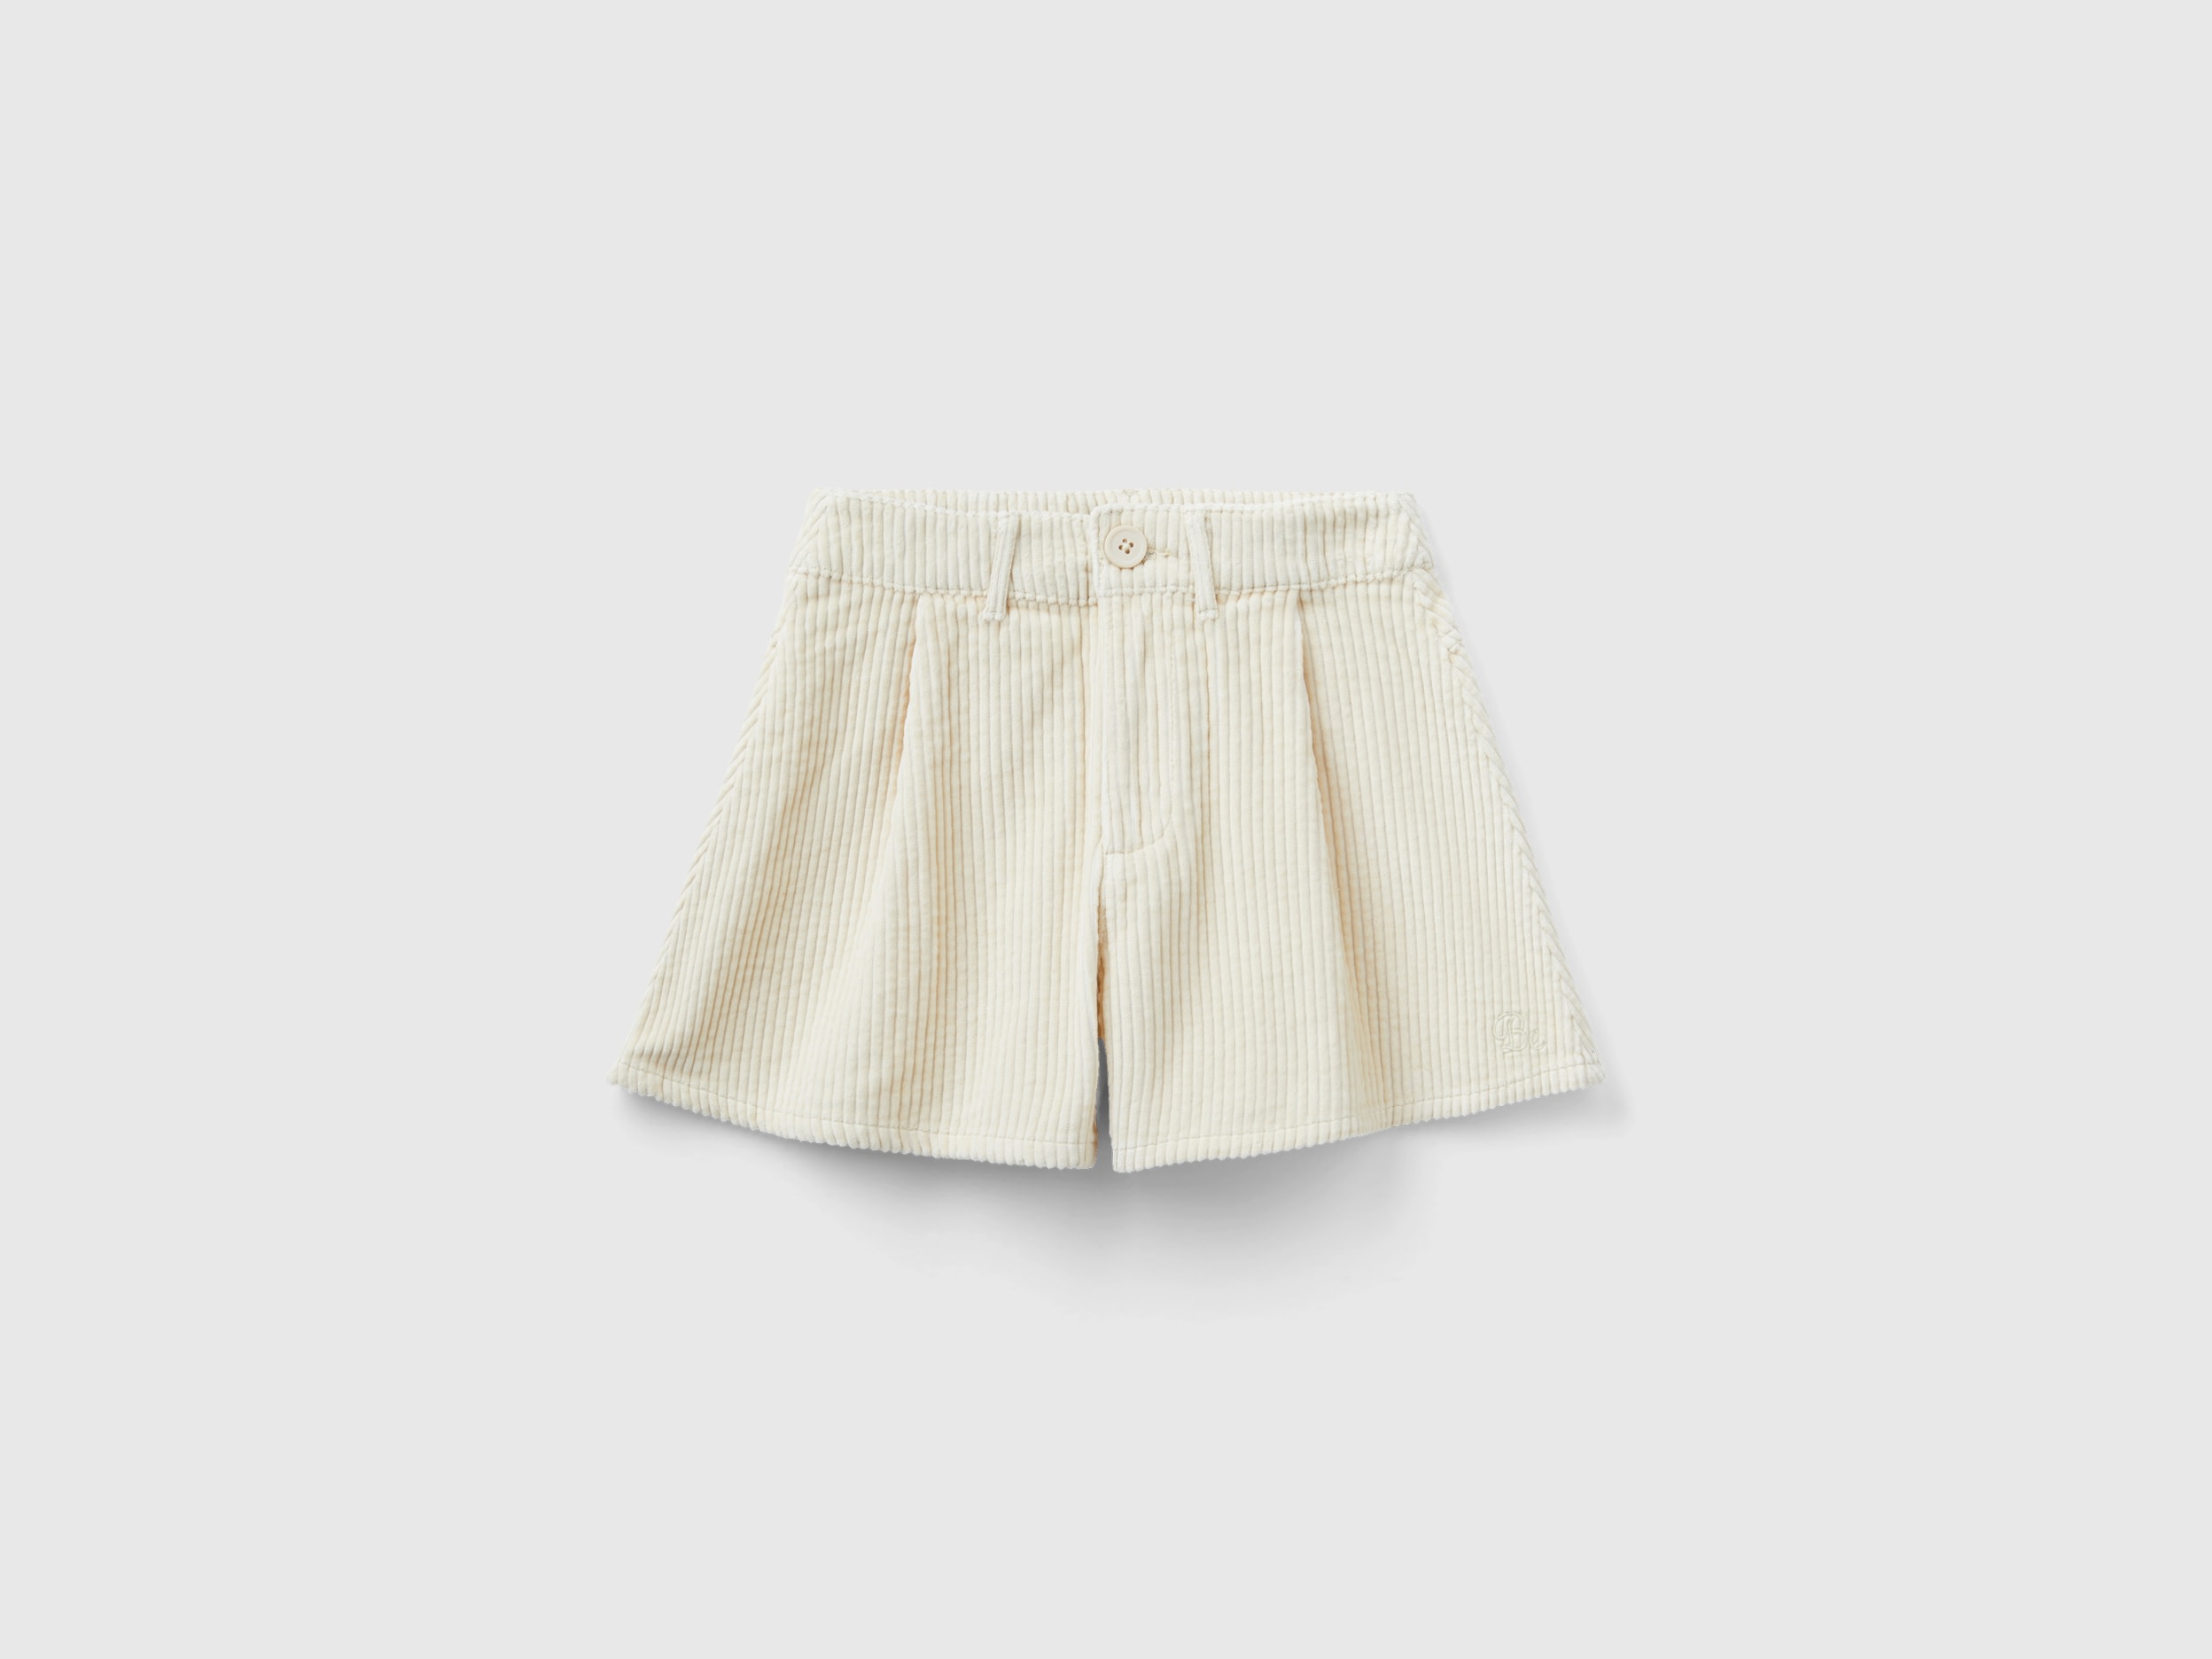 Benetton, Corduroy Bermuda Shorts, size L, Creamy White, Kids